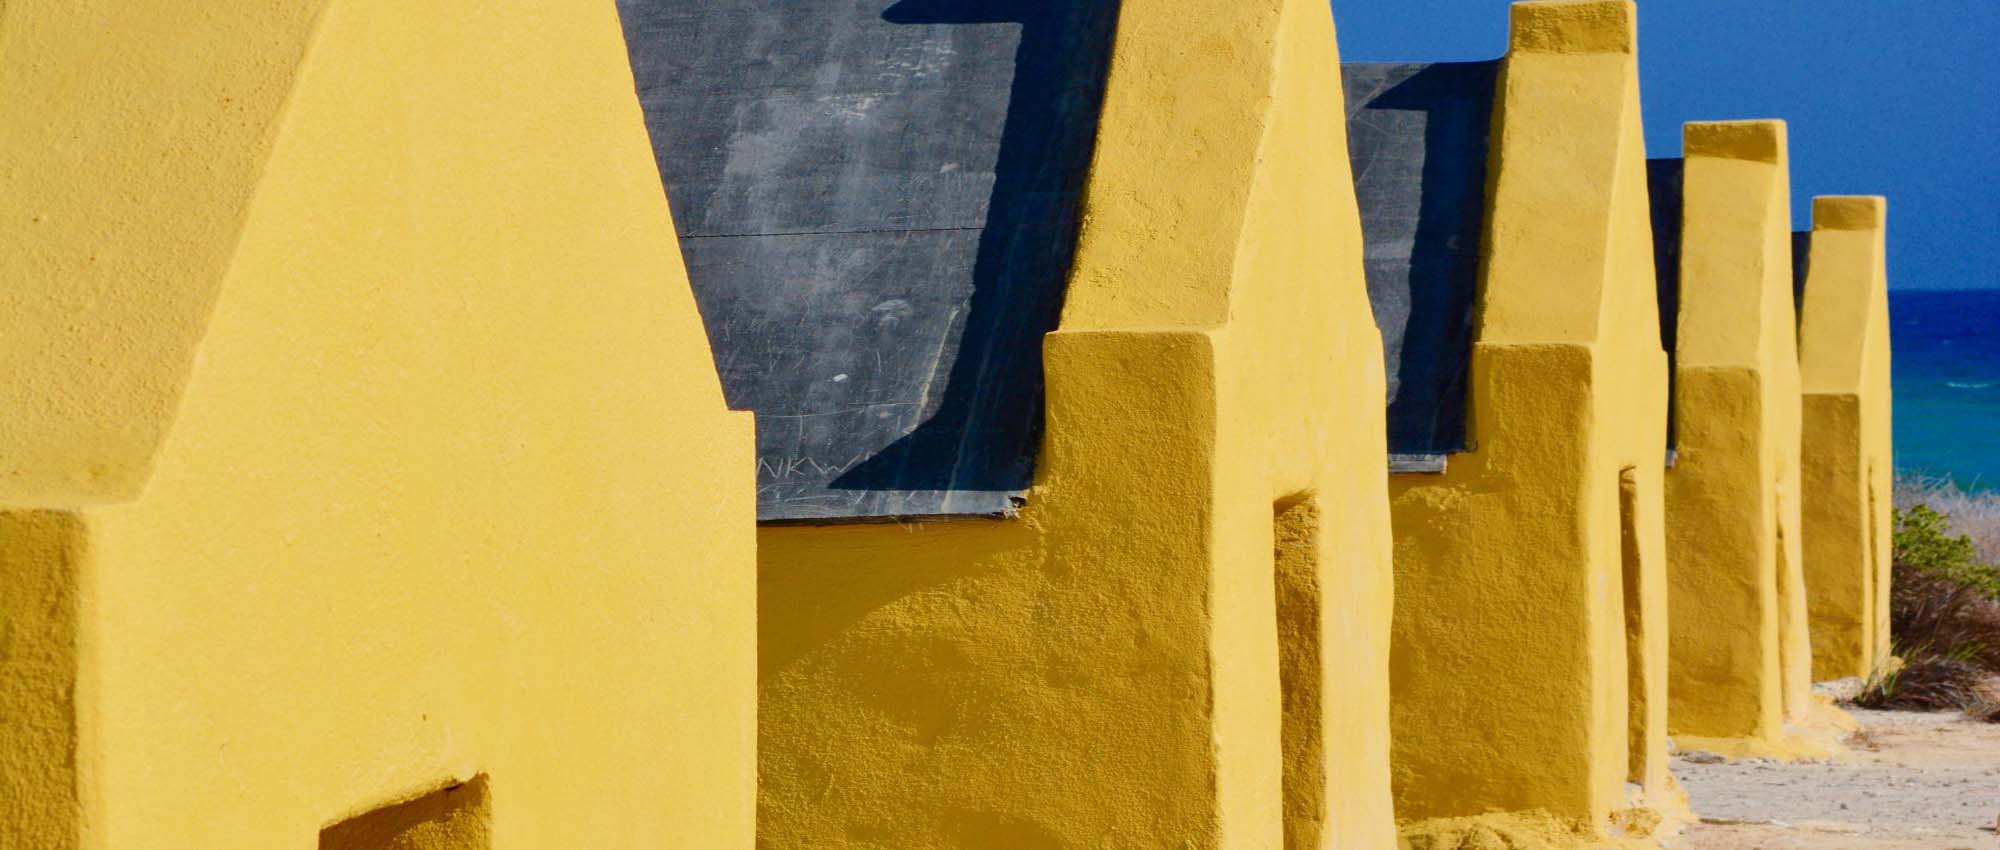 Close up shots of yellow huts